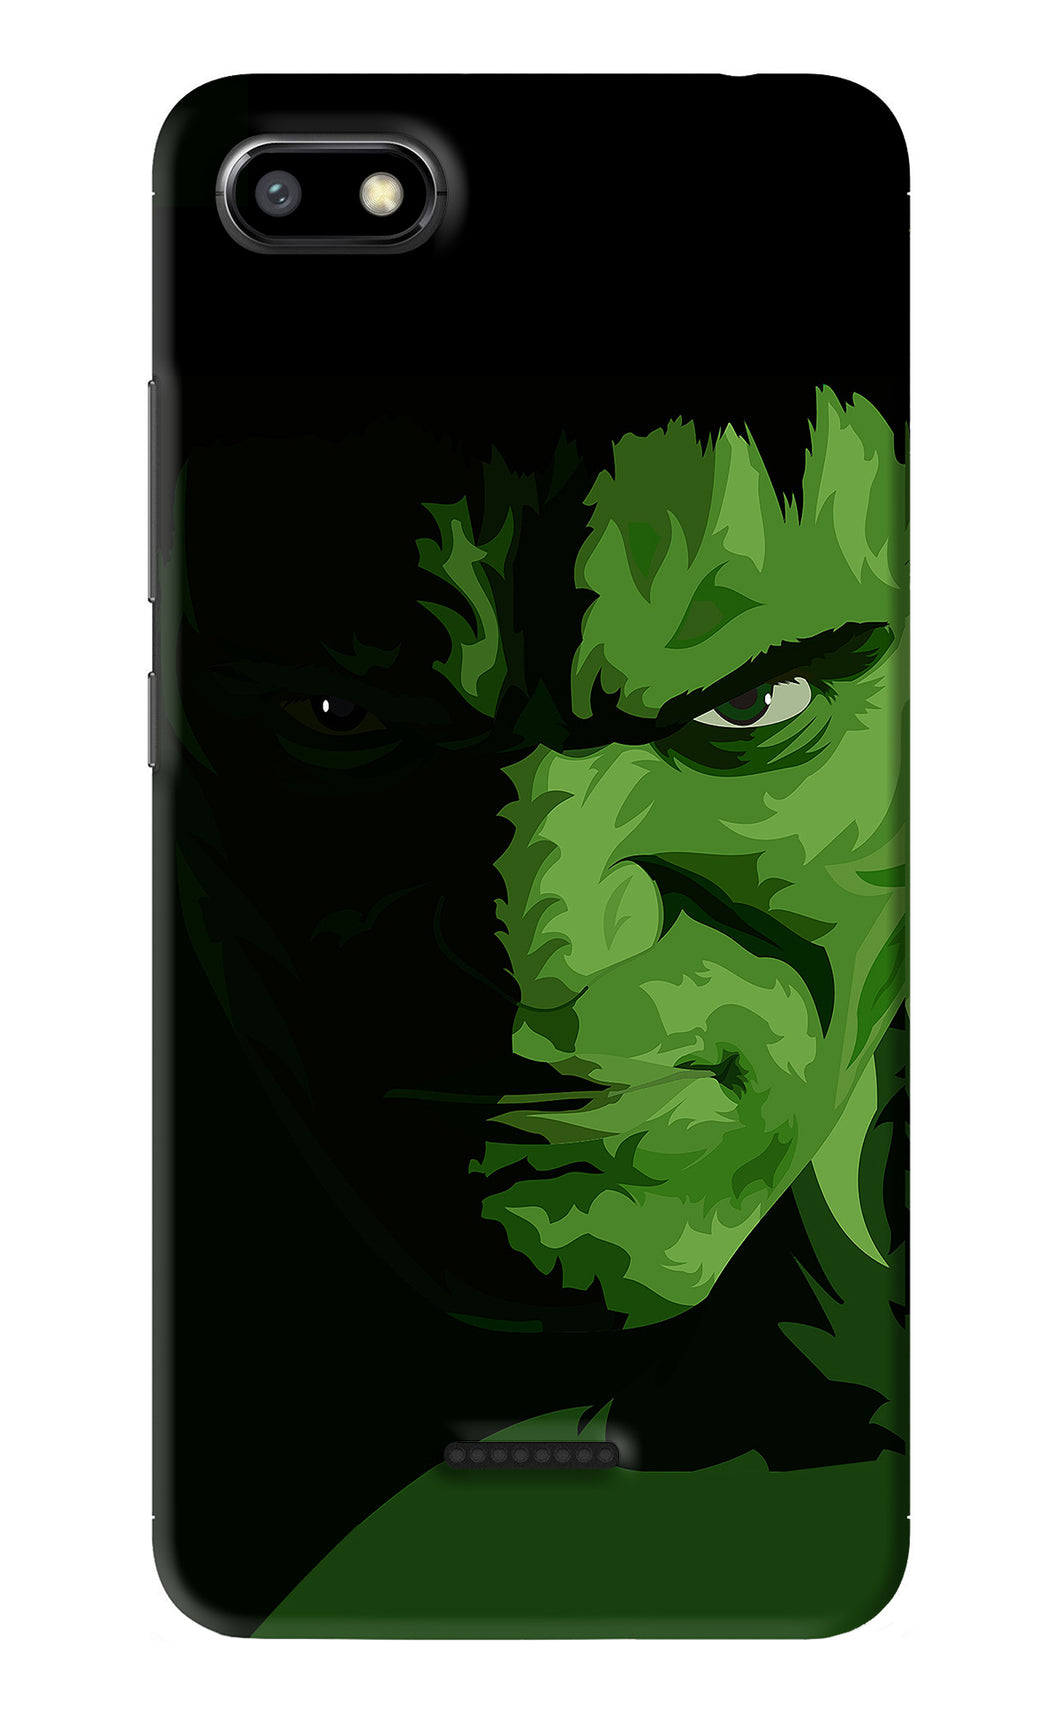 Hulk Xiaomi Redmi 6A Back Skin Wrap